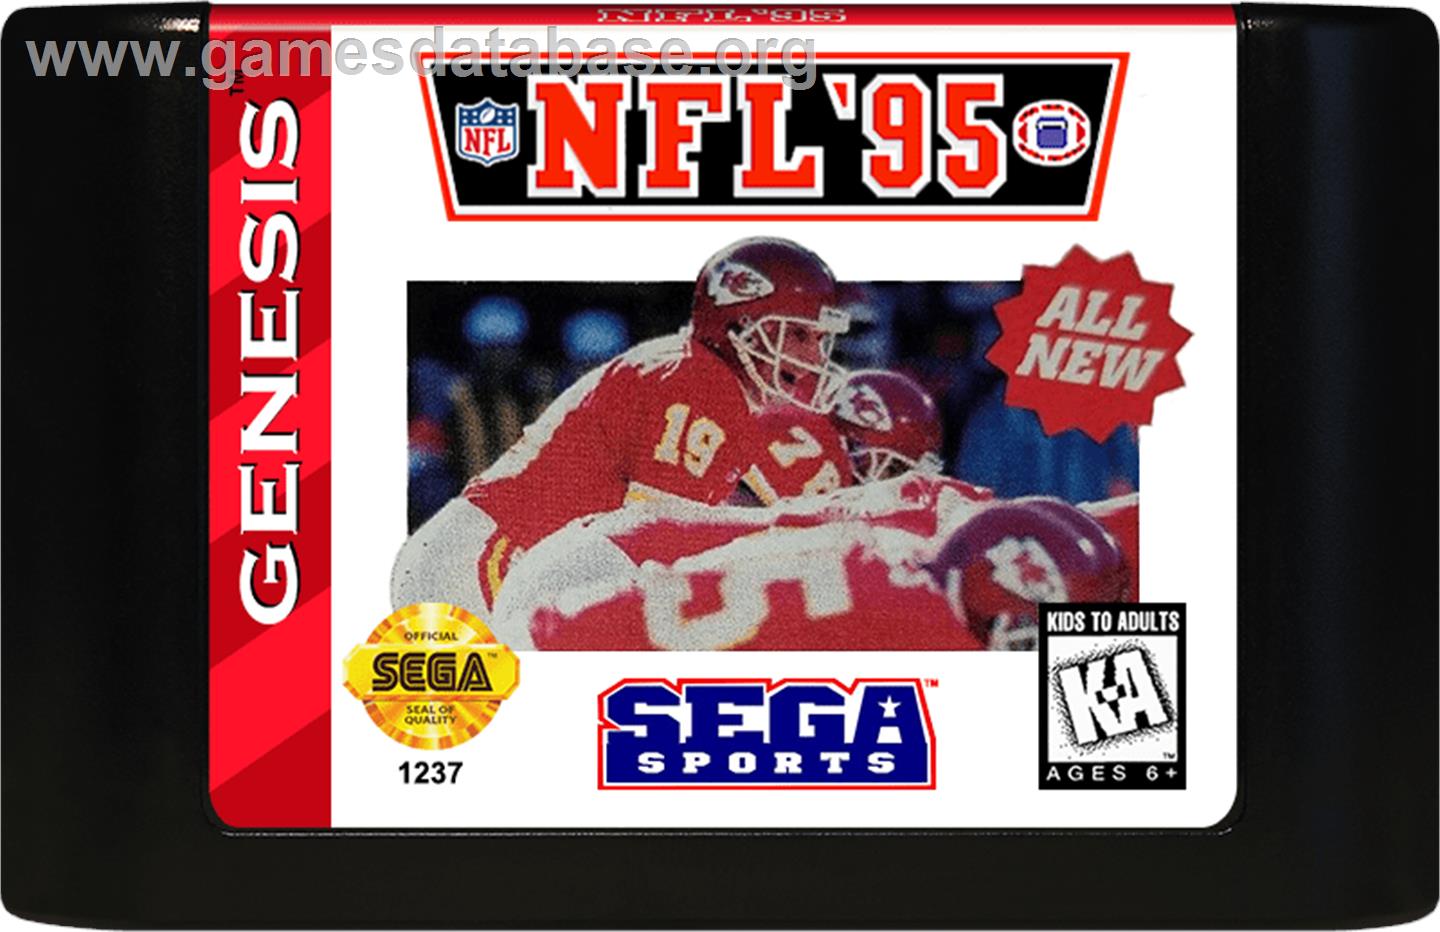 NFL '95 - Sega Genesis - Artwork - Cartridge